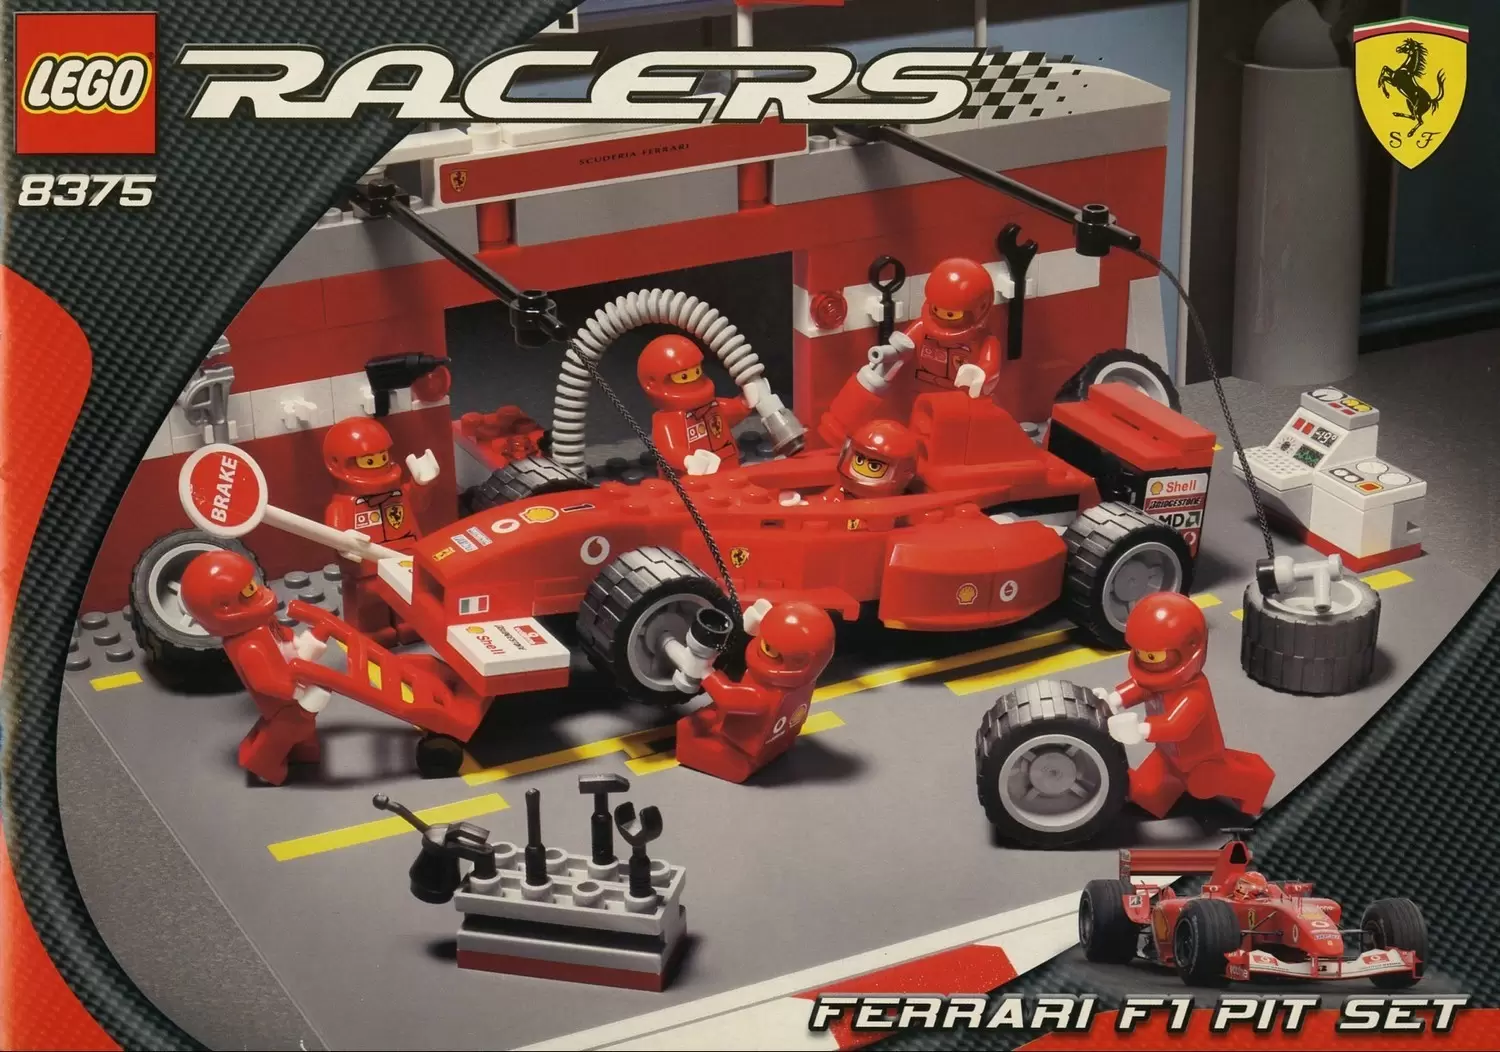 LEGO Racers - Ferrari F1 Pit Set